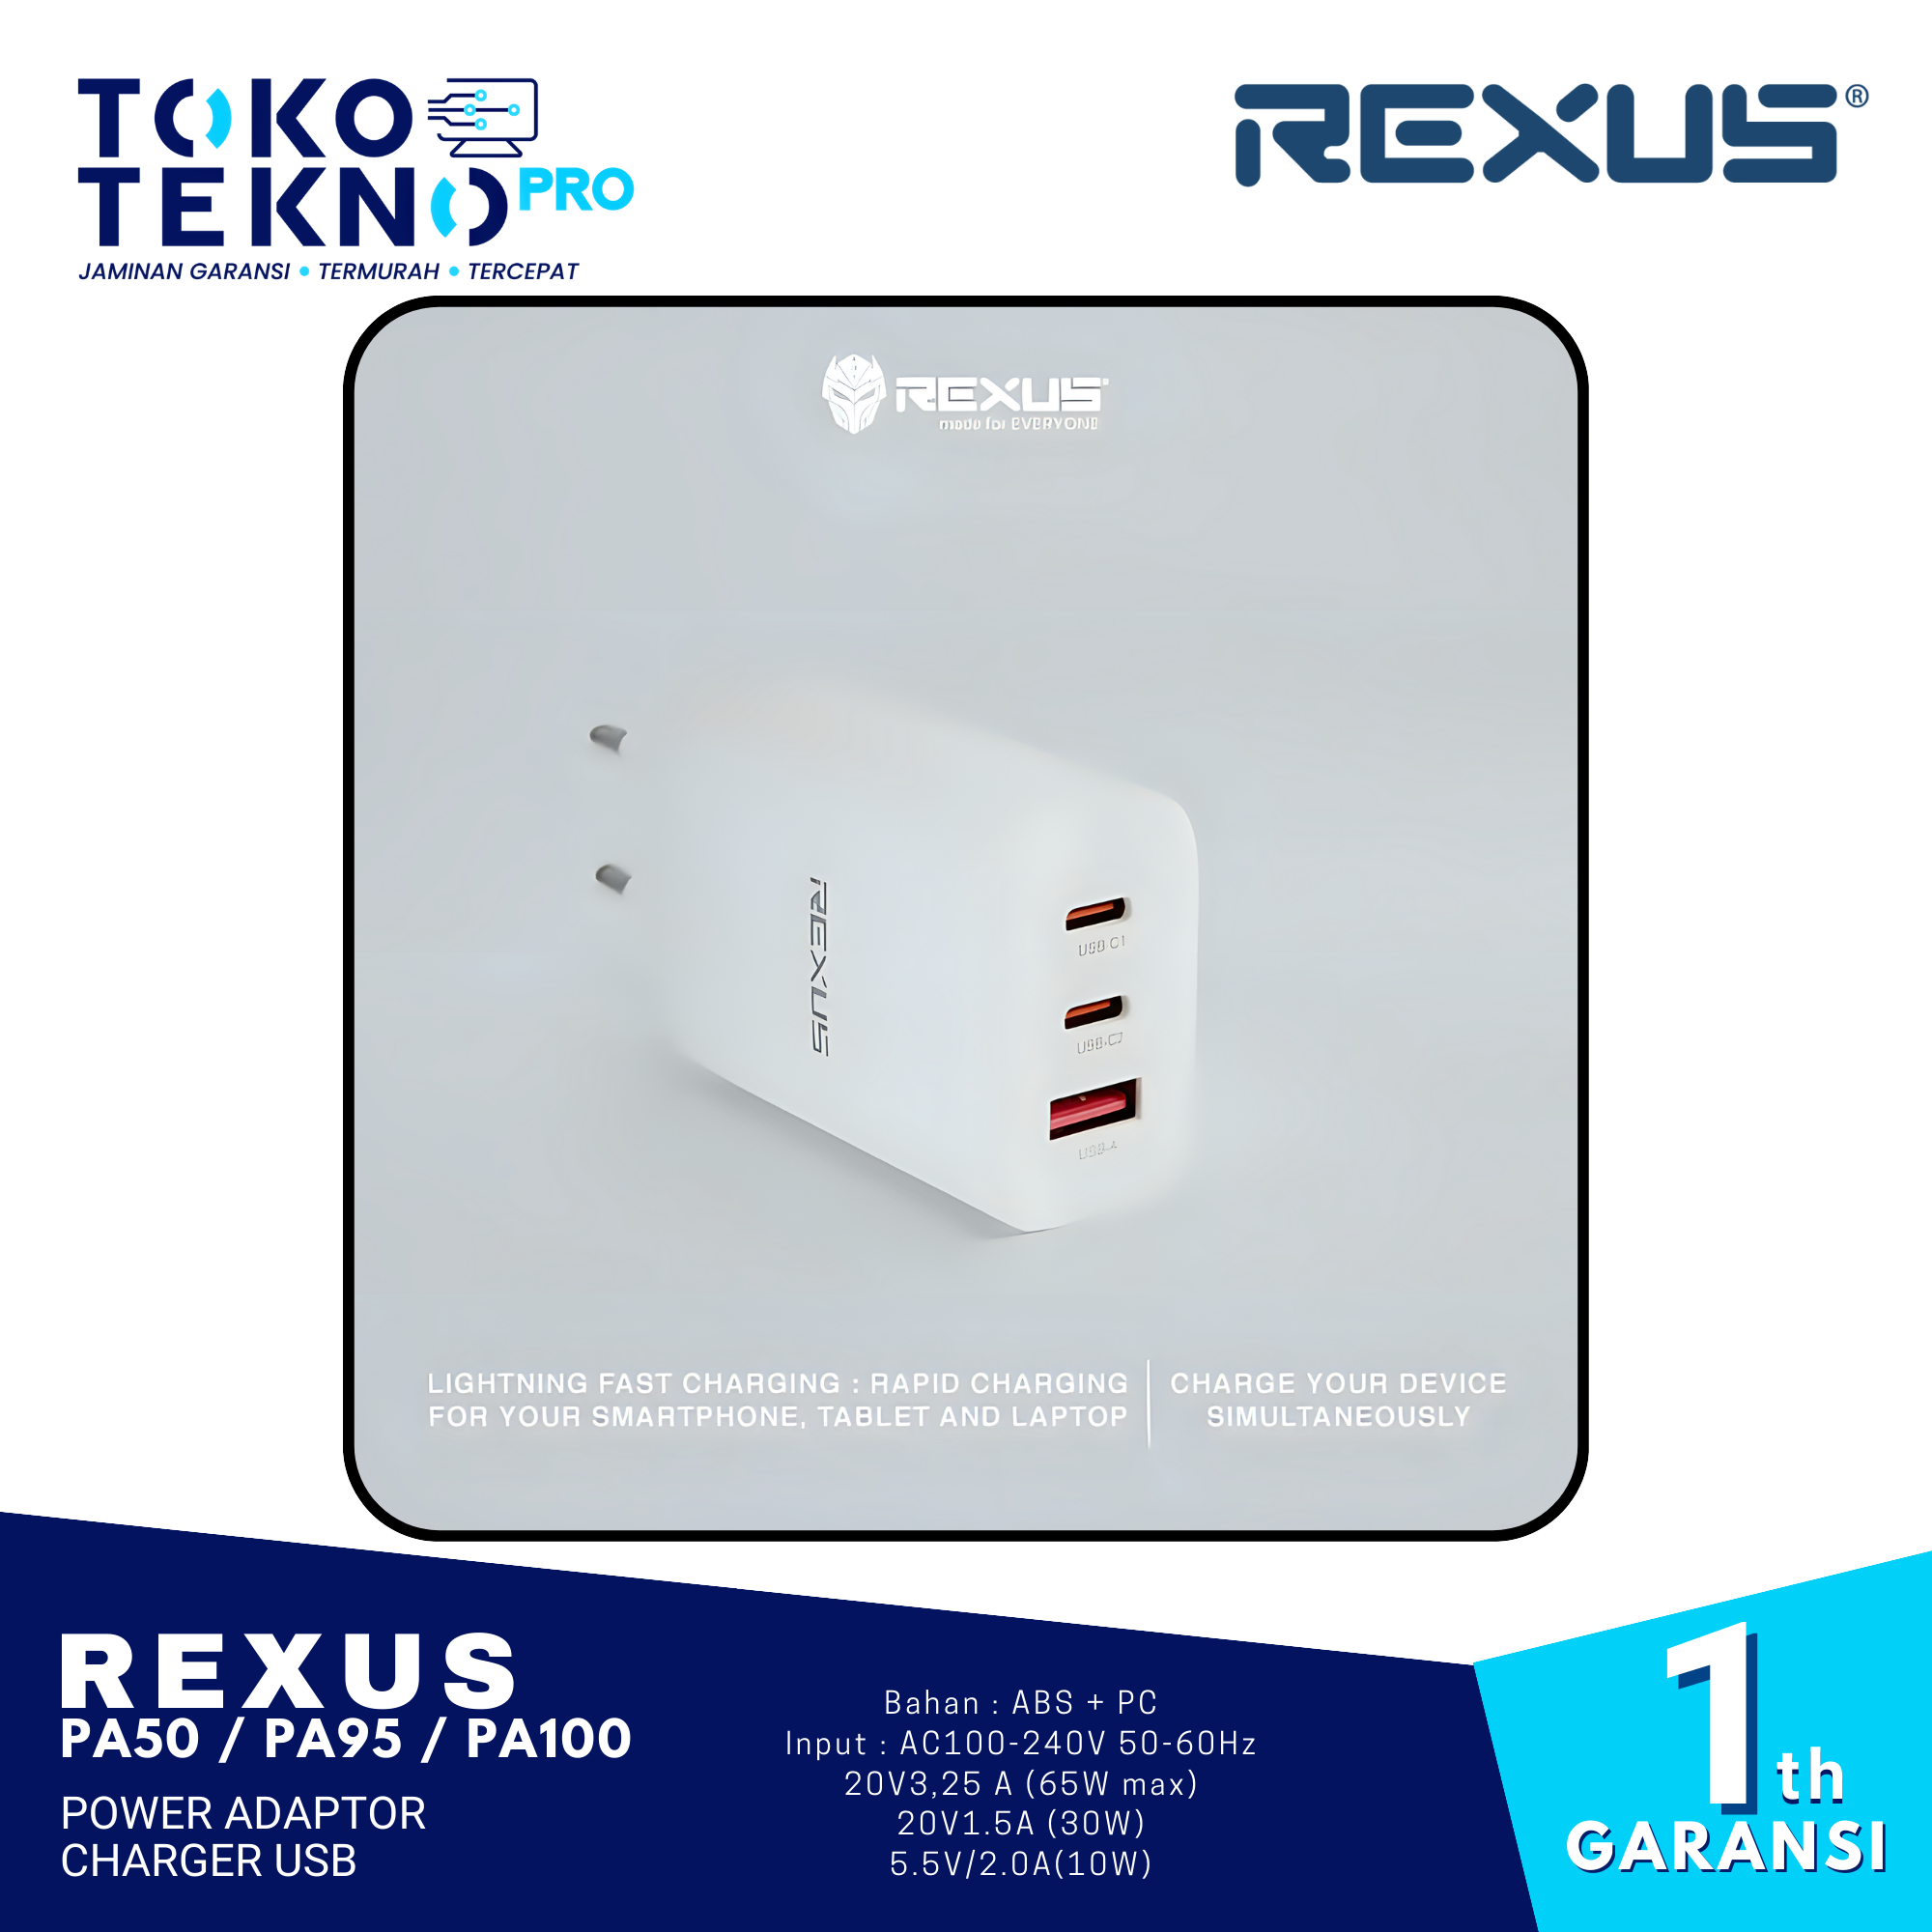 Rexus PA50 / PA95 / PA100 Power Adaptor Charger USB